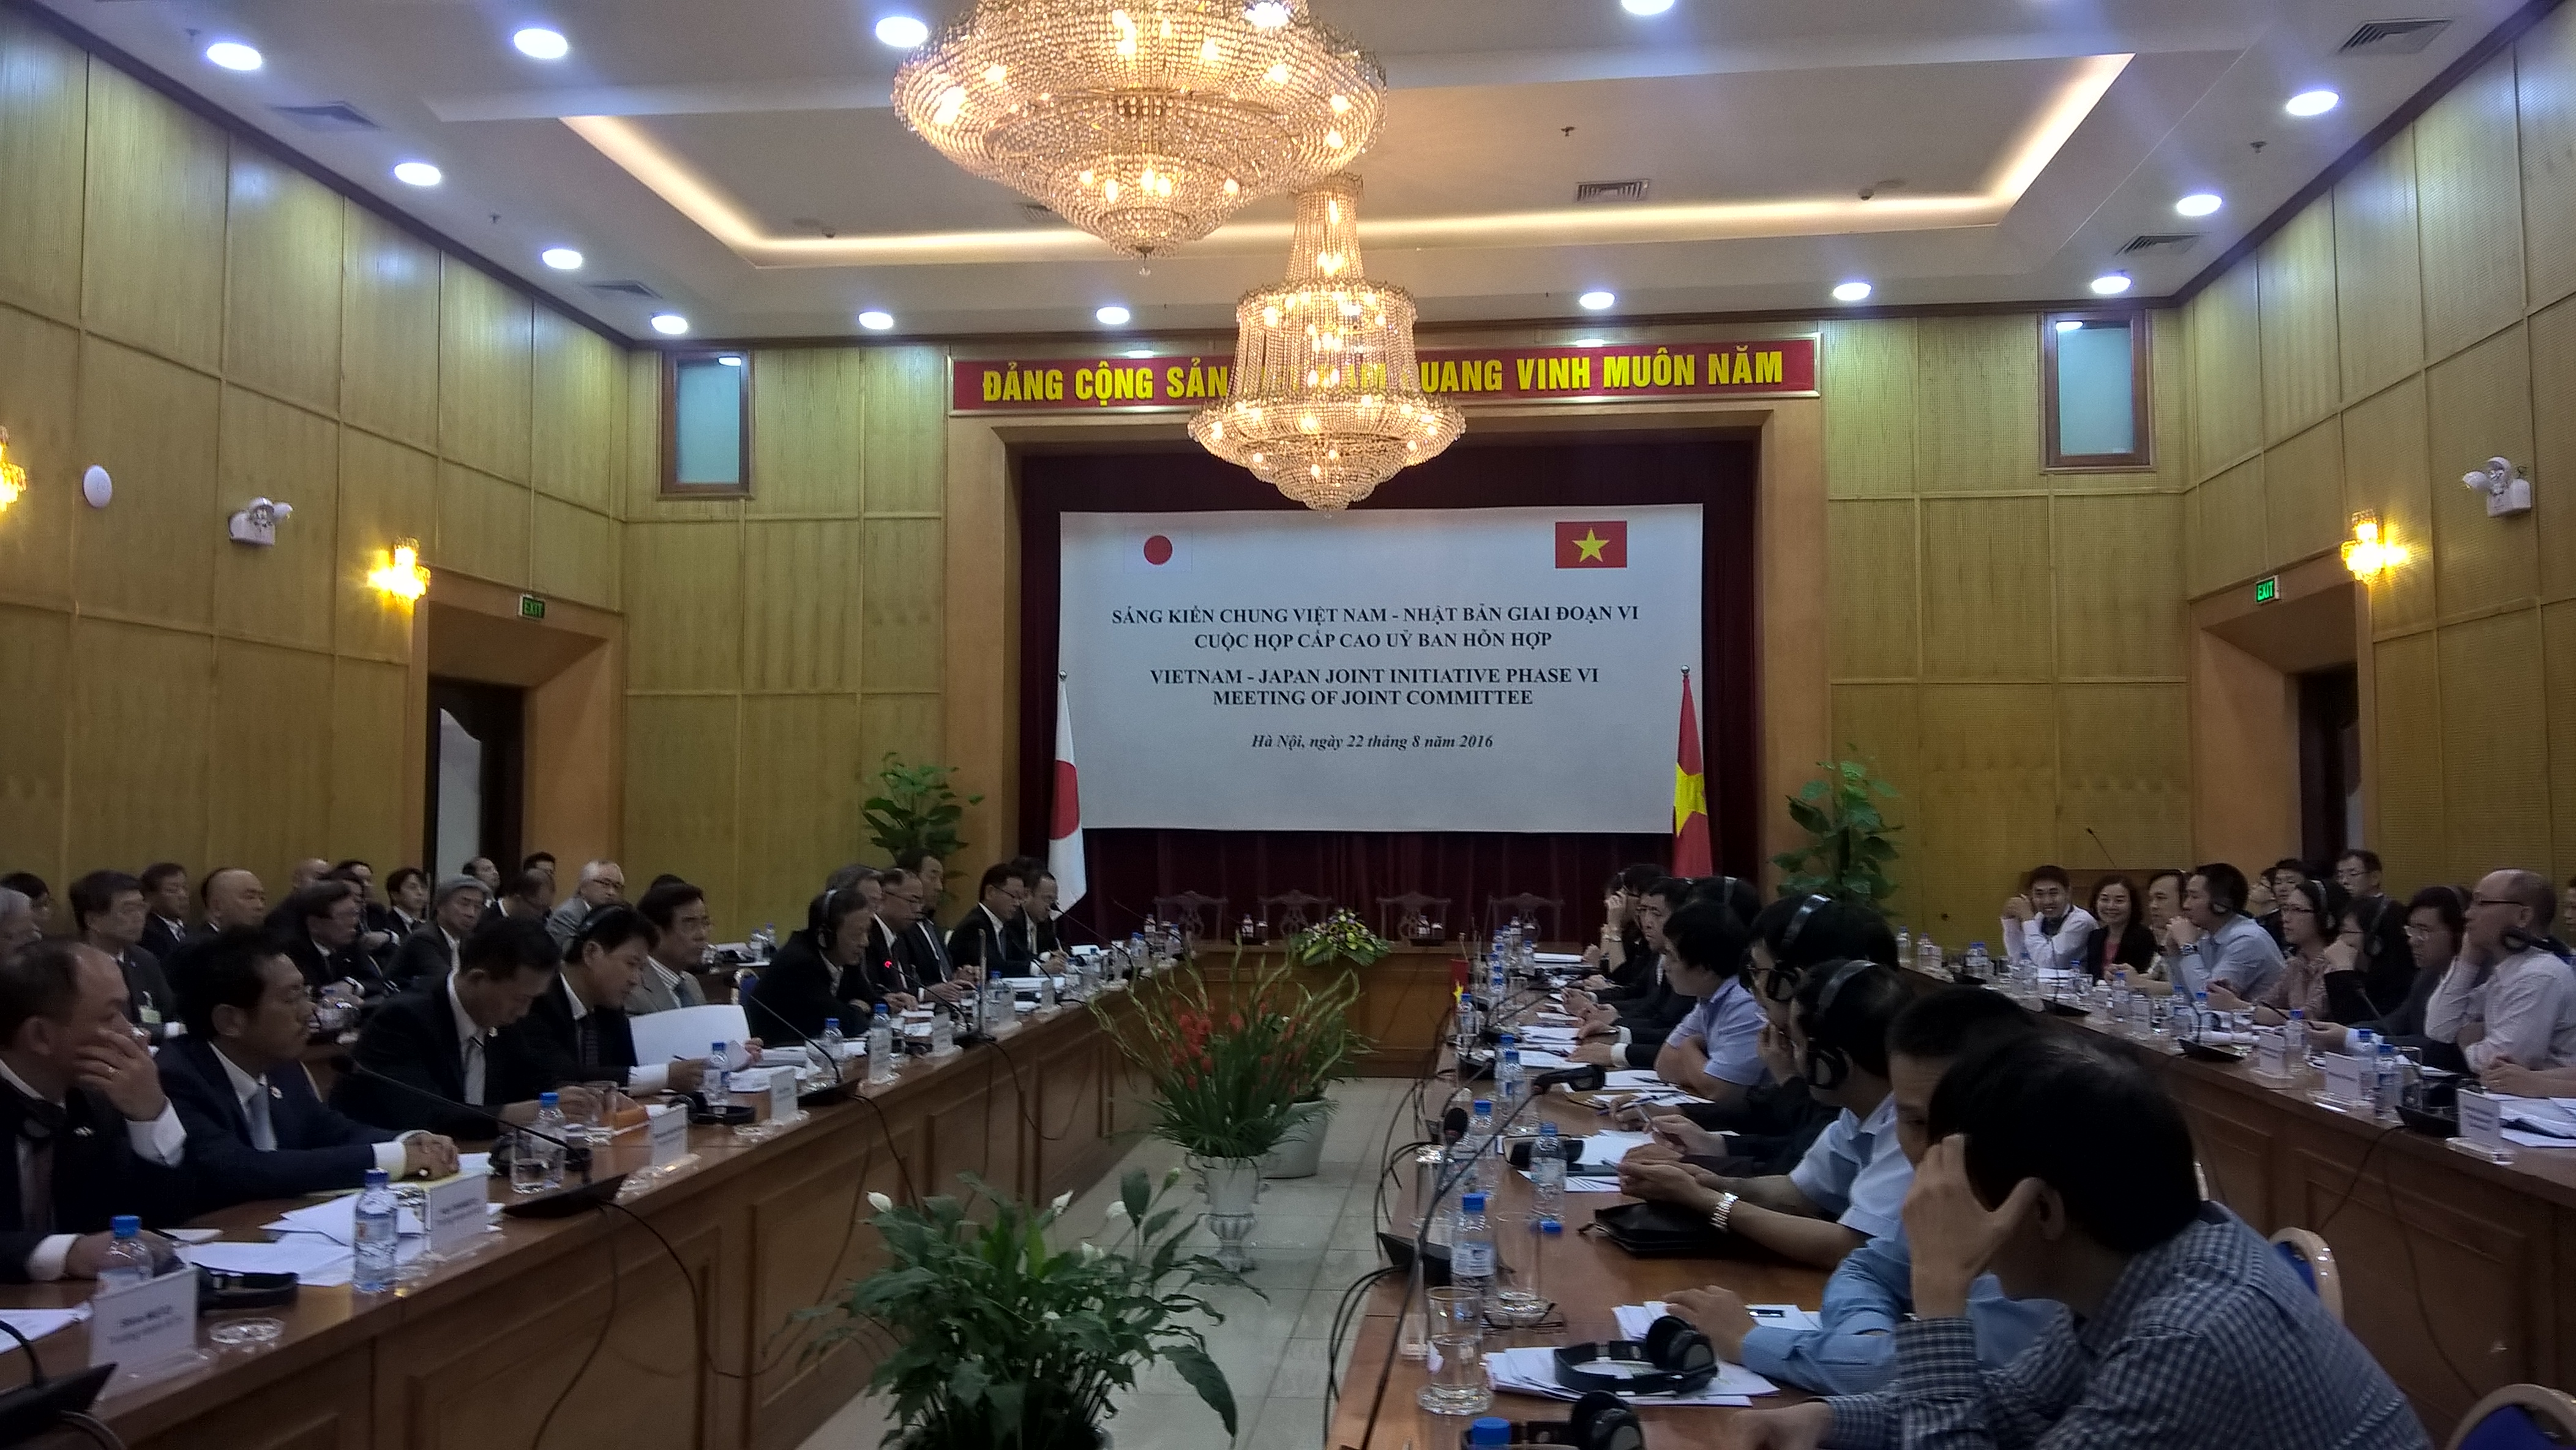 
Sáng kiến chung Việt Nam - Nhật Bản, nơi gặp gỡ, đối thoại, phản biện chính sách và tư vấn giữa cộng đồng doanh nghiệp, cơ quan Chính phủ Nhật Bản và các cơ quan Bộ, ngành của Việt Nam tiếp tục được thực hiện giai đoạn VI (2016 - 2017)
